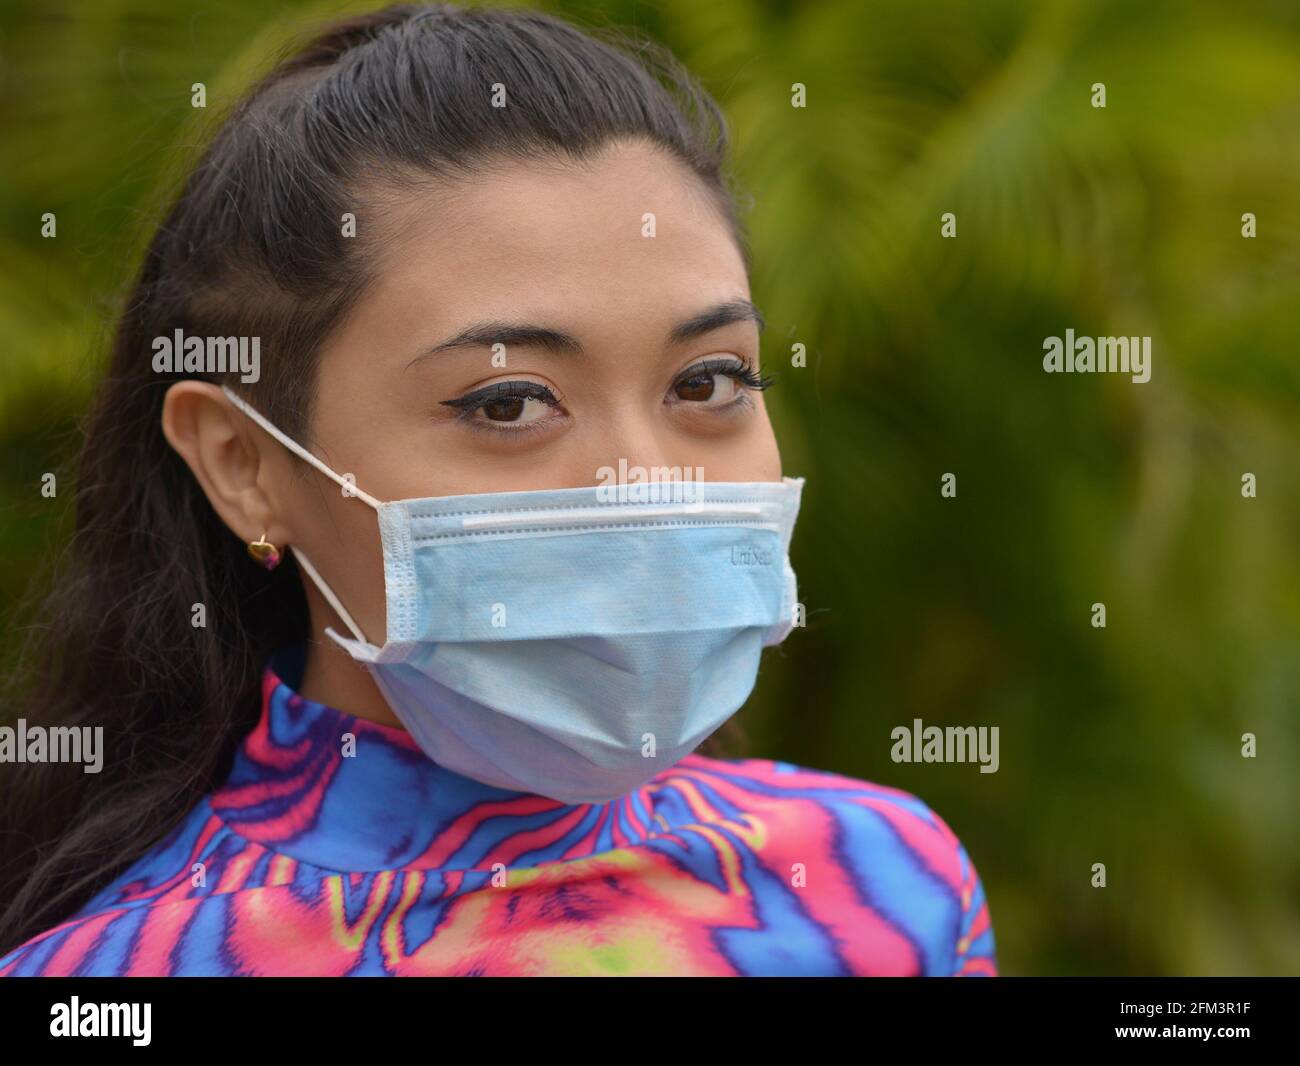 Giovane bruna caucasica con gli occhi graziosi indossa una maschera chirurgica blu chiaro durante la pandemia globale del coronavirus e guarda lo spettatore. Foto Stock